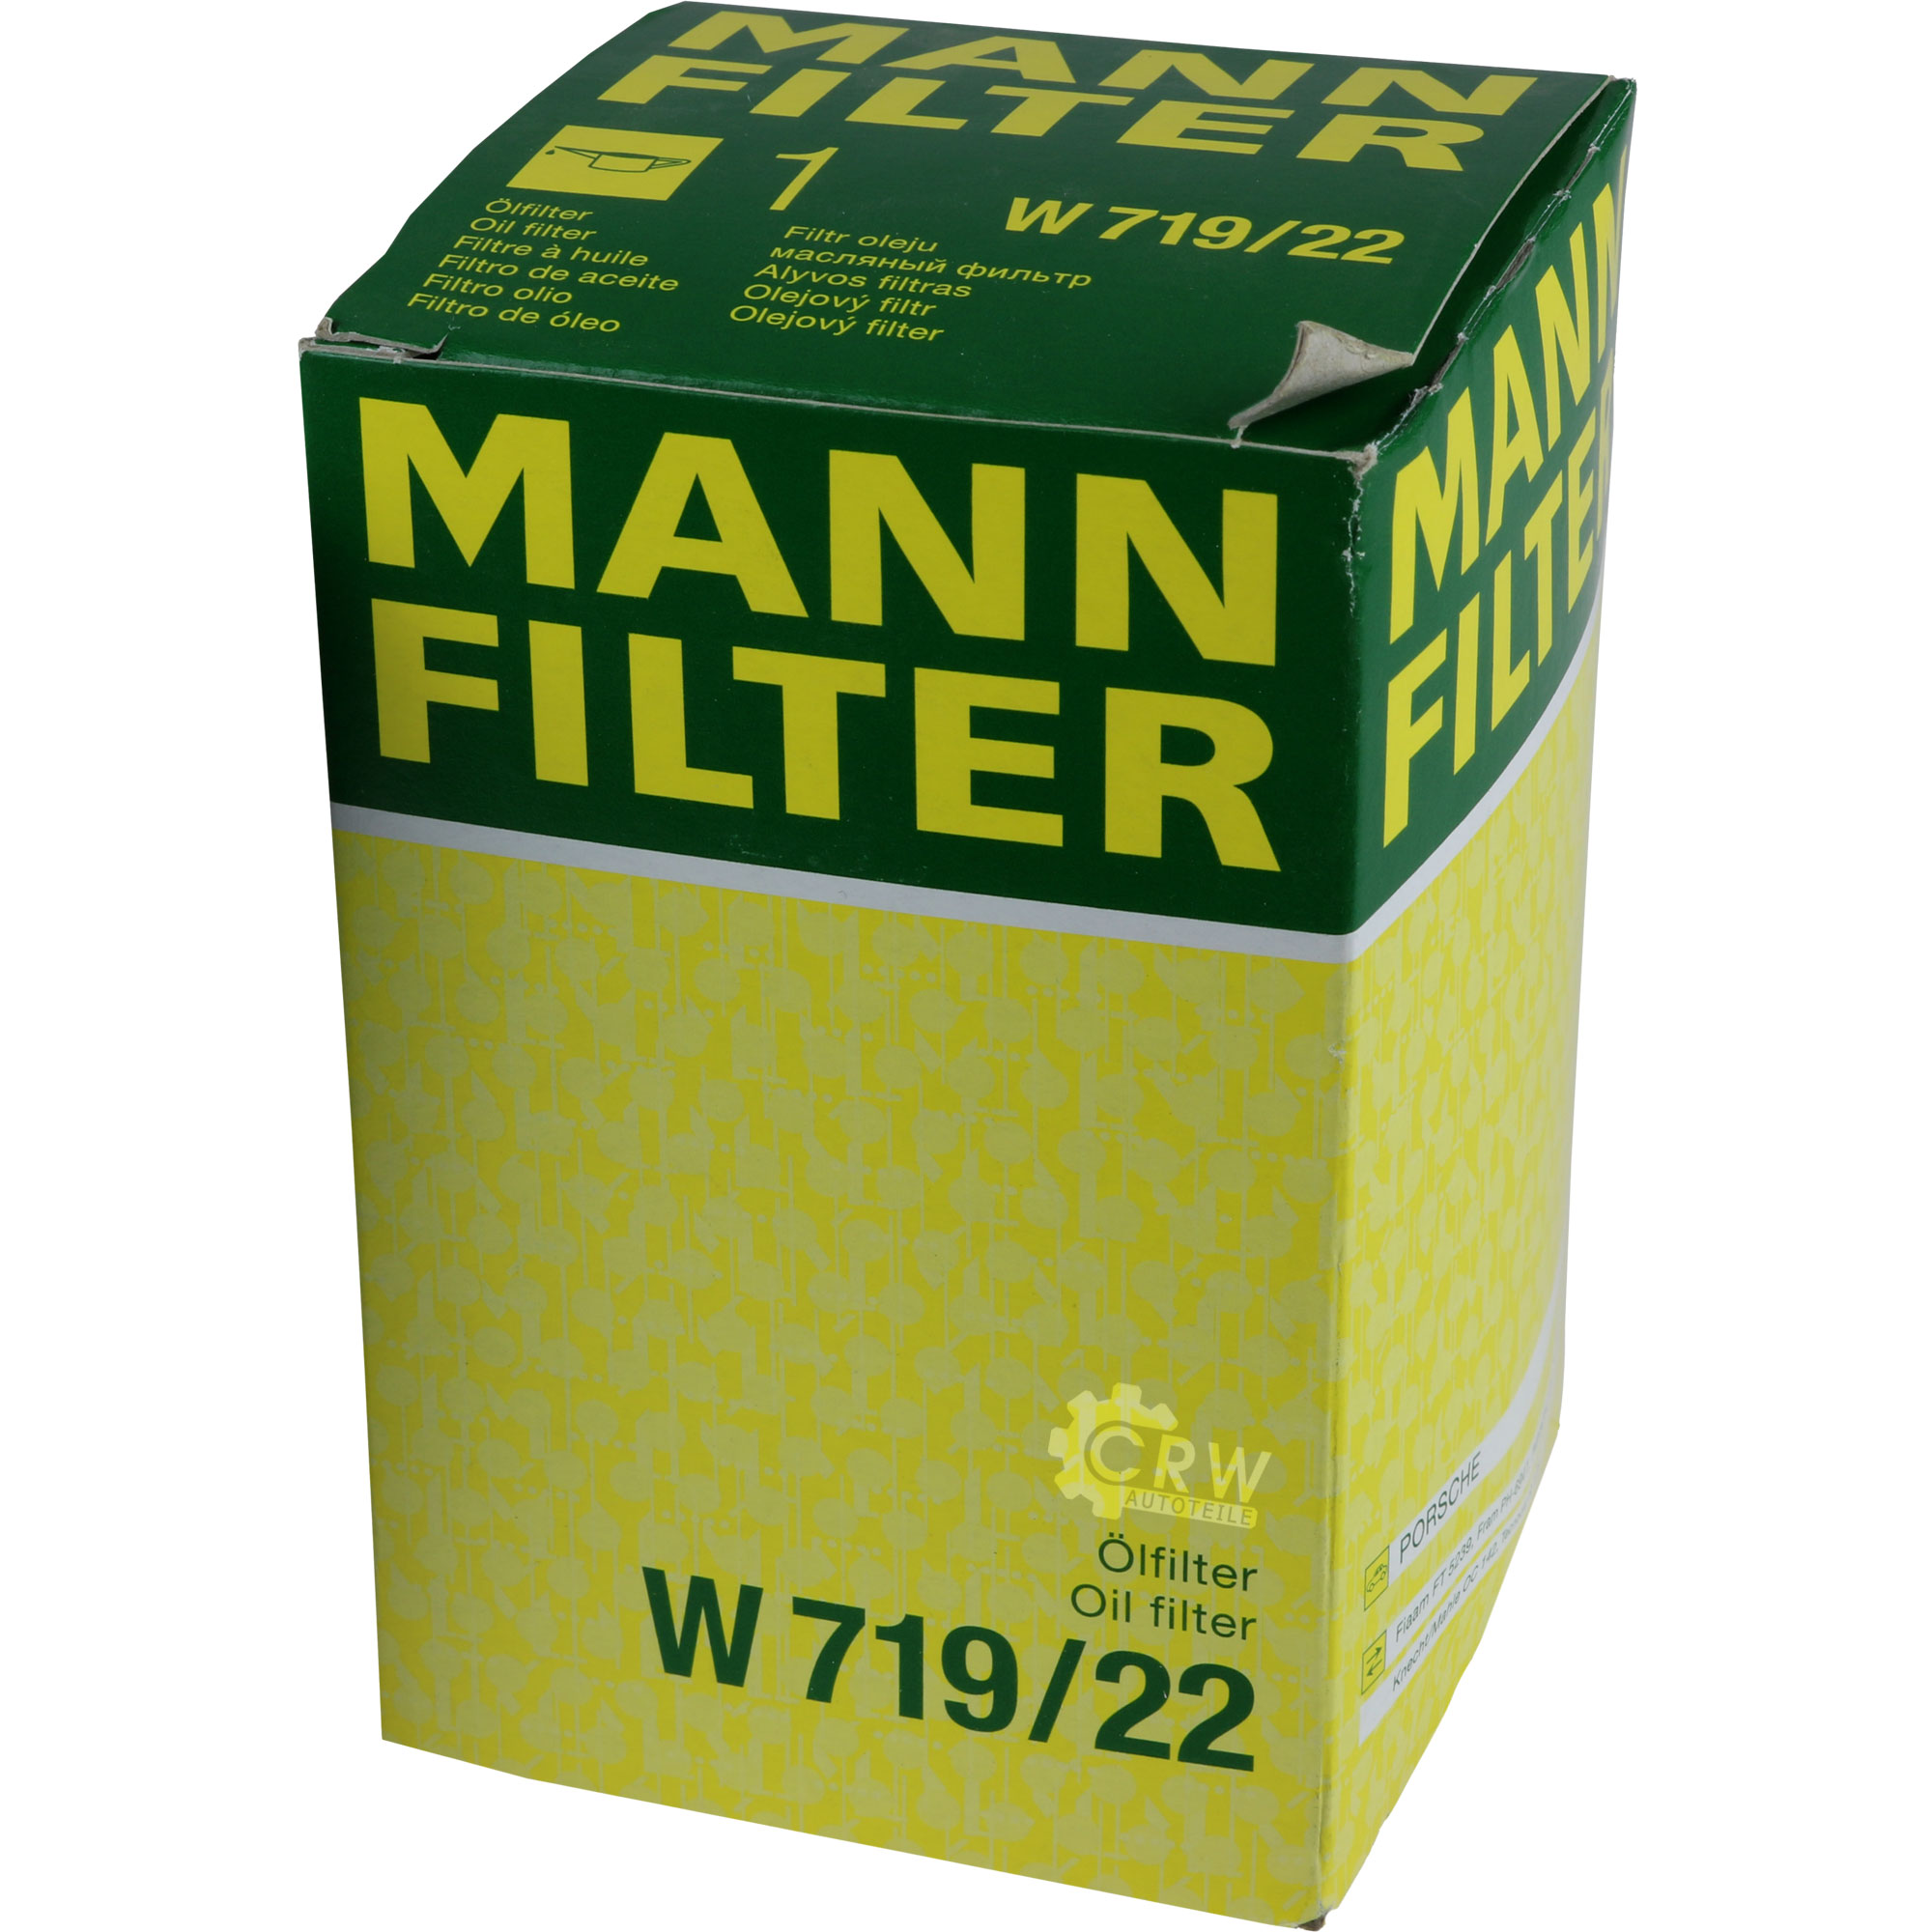 MANN-FILTER Ölfilter W 719/22 Oil Filter